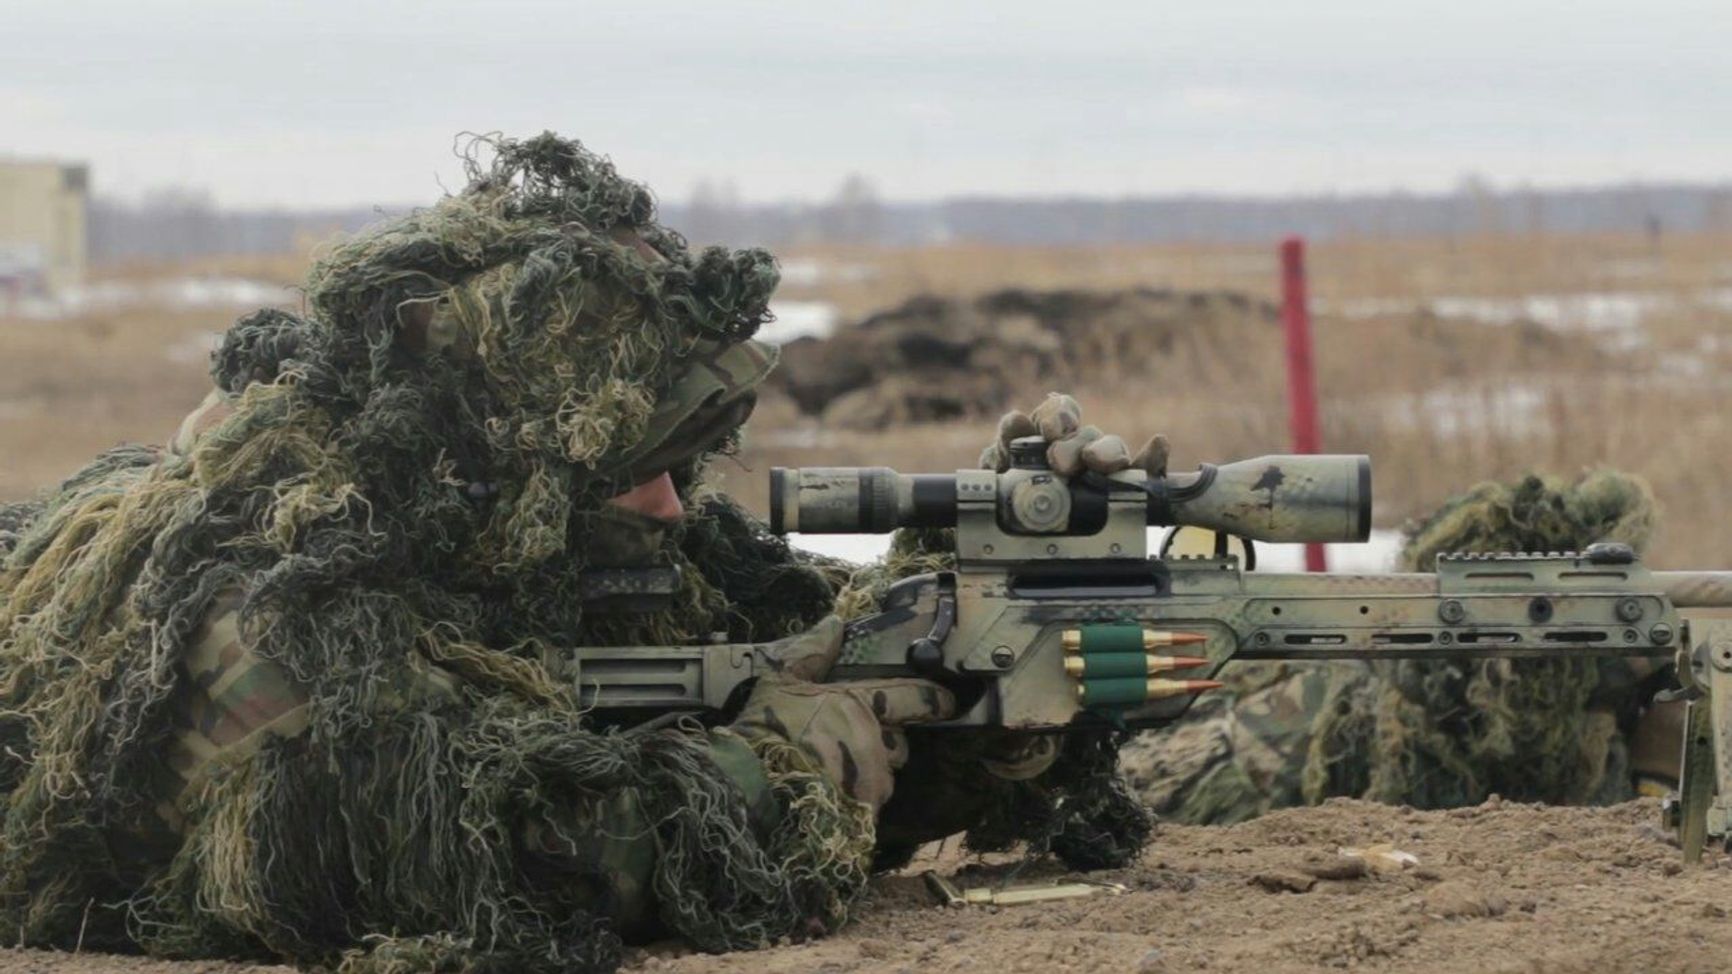 Снайпер 24-й отдельной гвардейской бригады специального назначения  с винтовкой Steyr-Mannlicher SSG 08. Полигон Шилово, Новосибирская область, май 2019